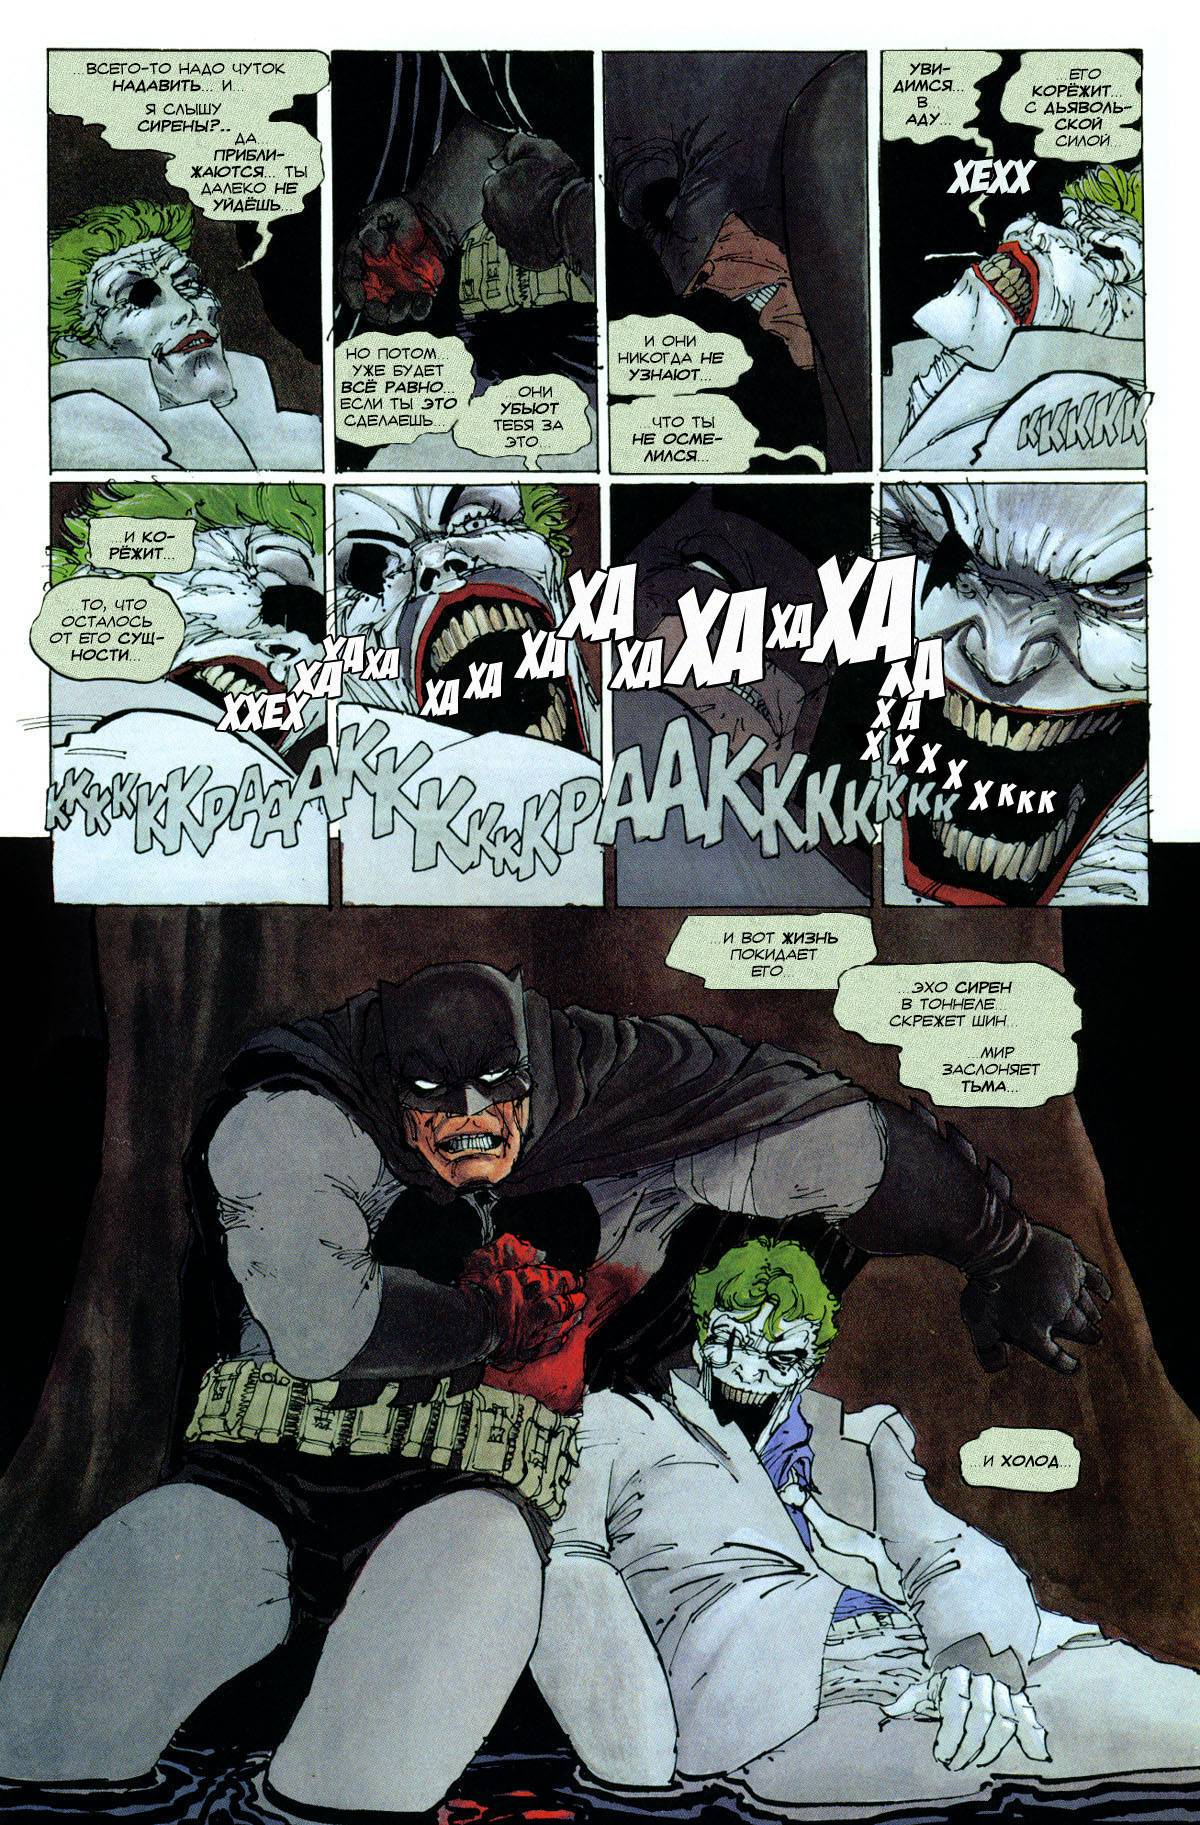 Бэтмен: Возвращение Темного Рыцаря №3 онлайн